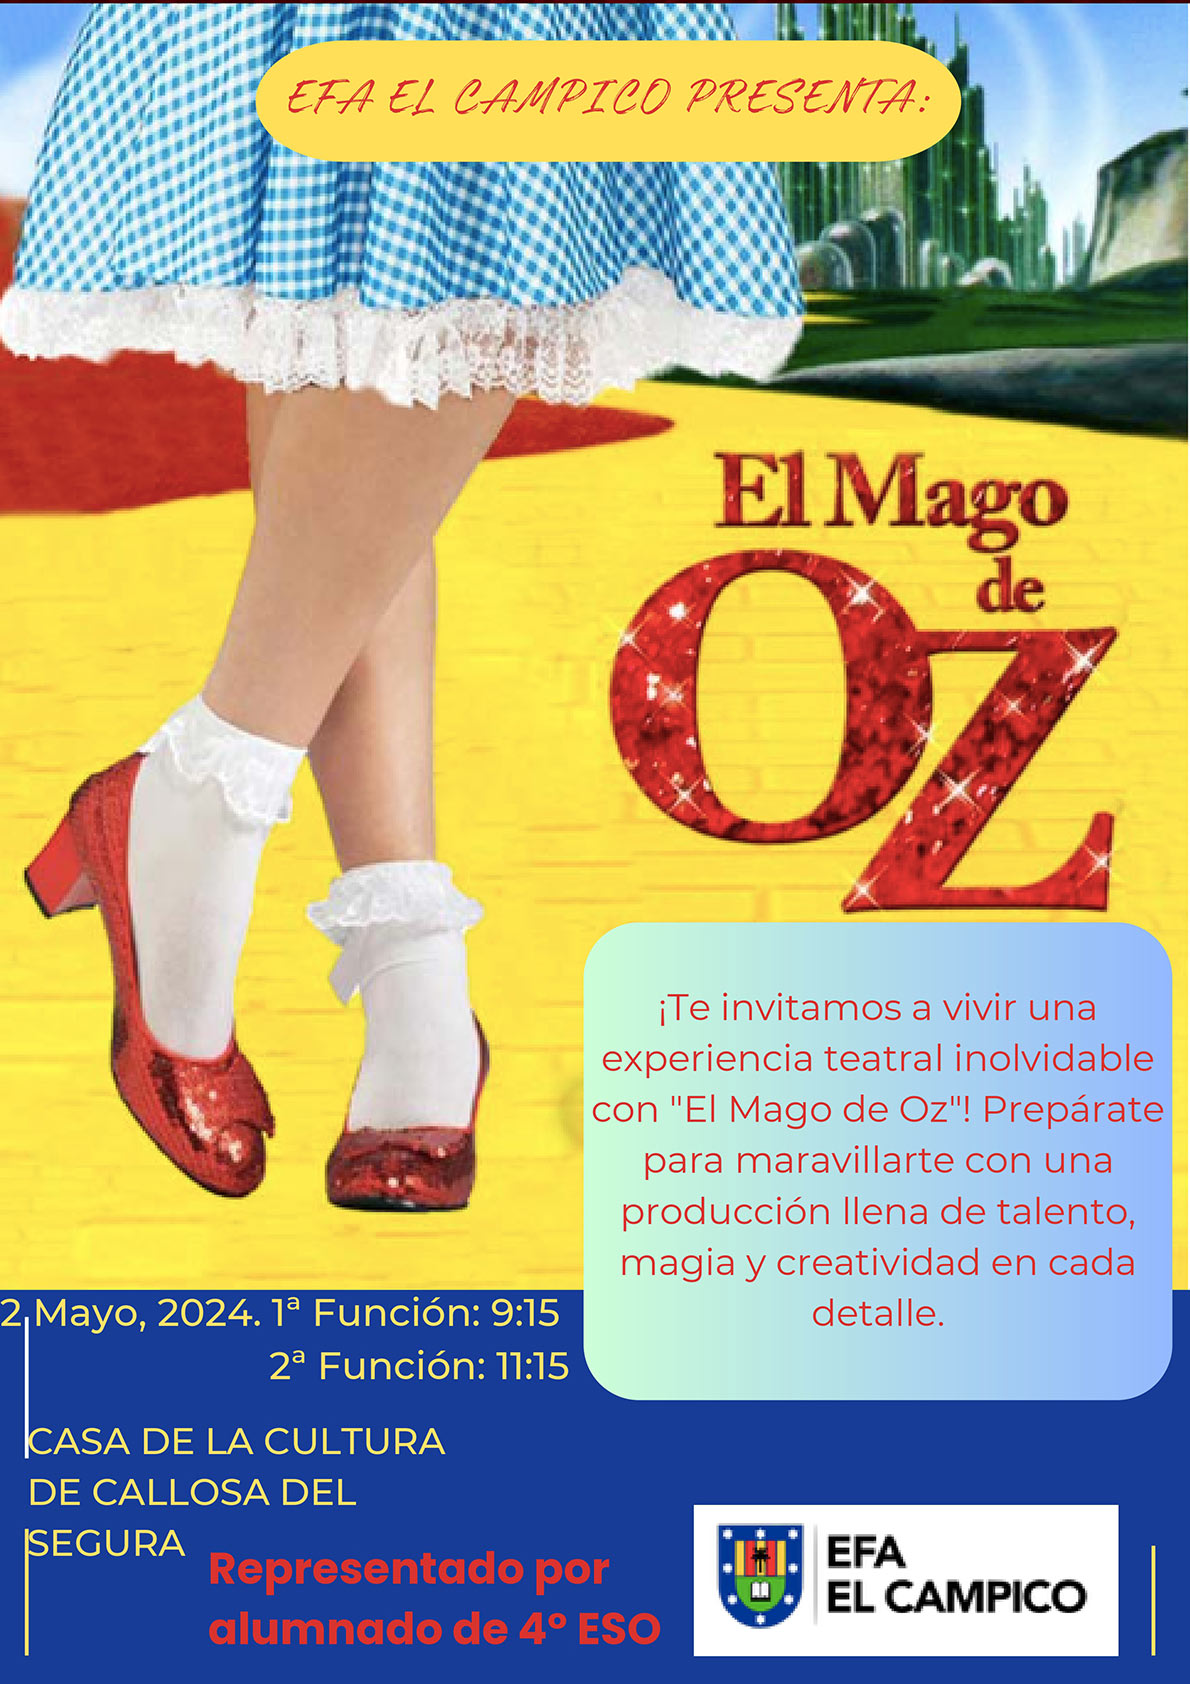 TEATRO El Mago de Oz - Efa El Campico